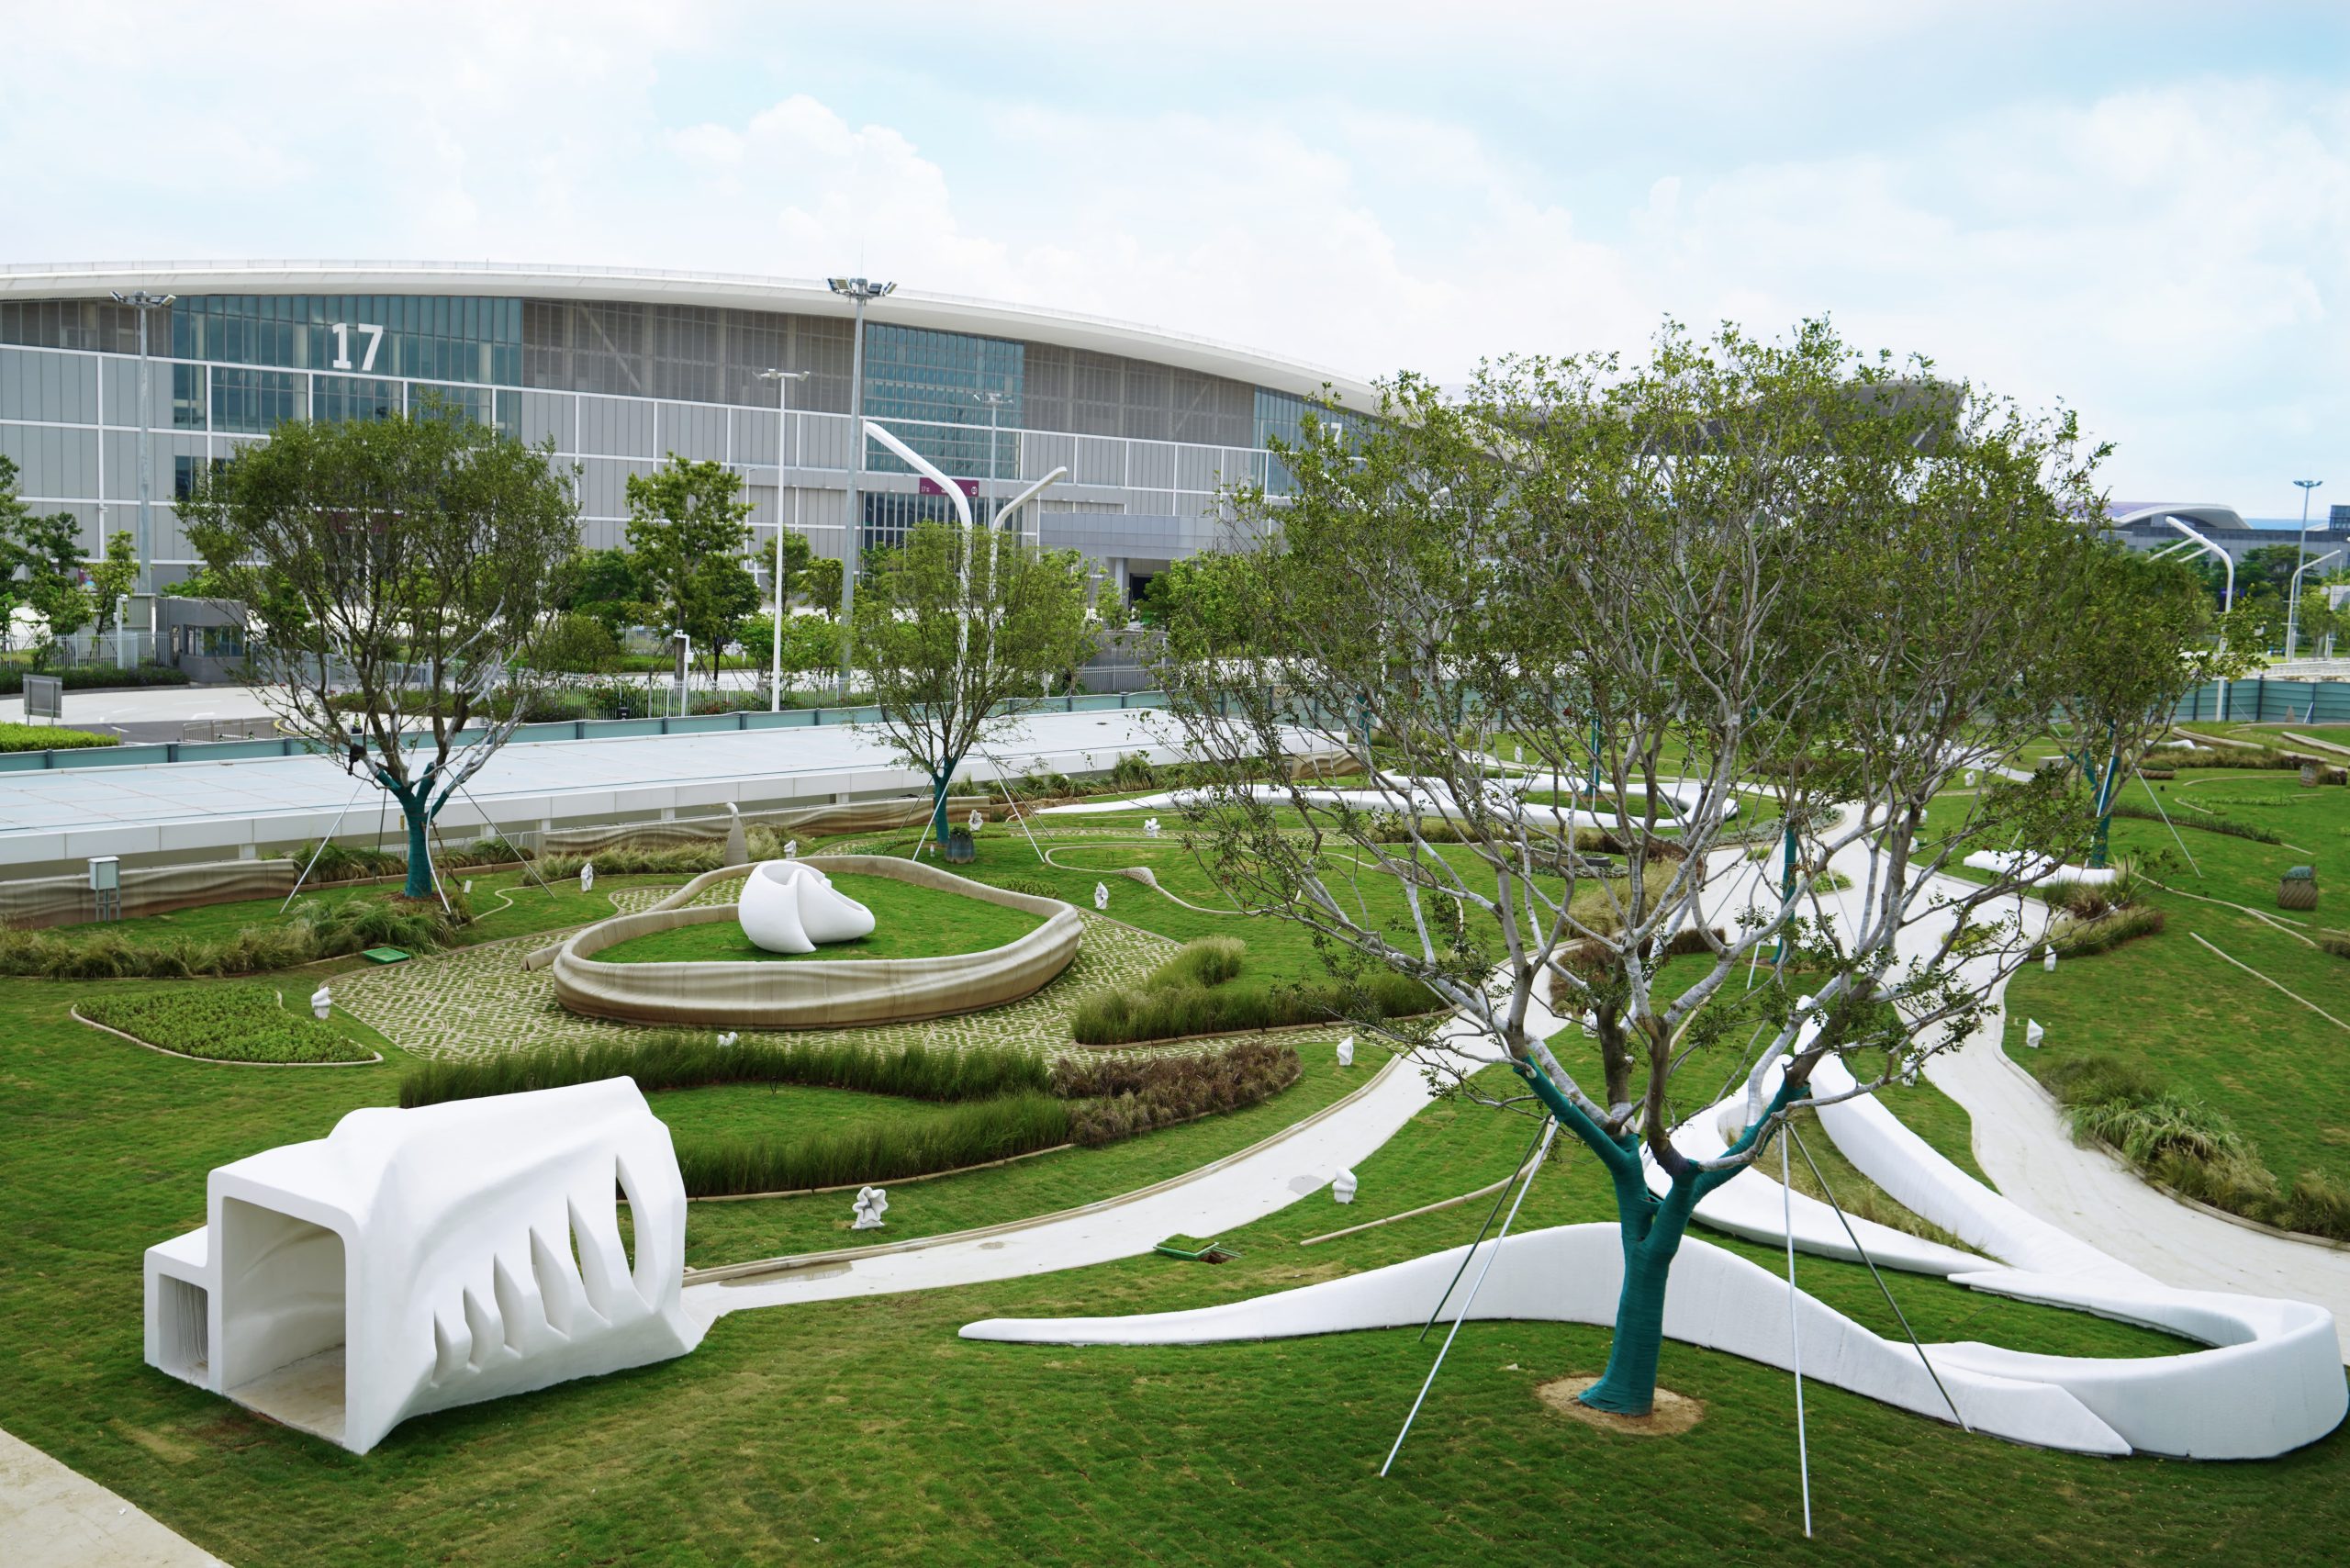 该公园由2000多个3D打印混凝土块组成。通过AICT照片。